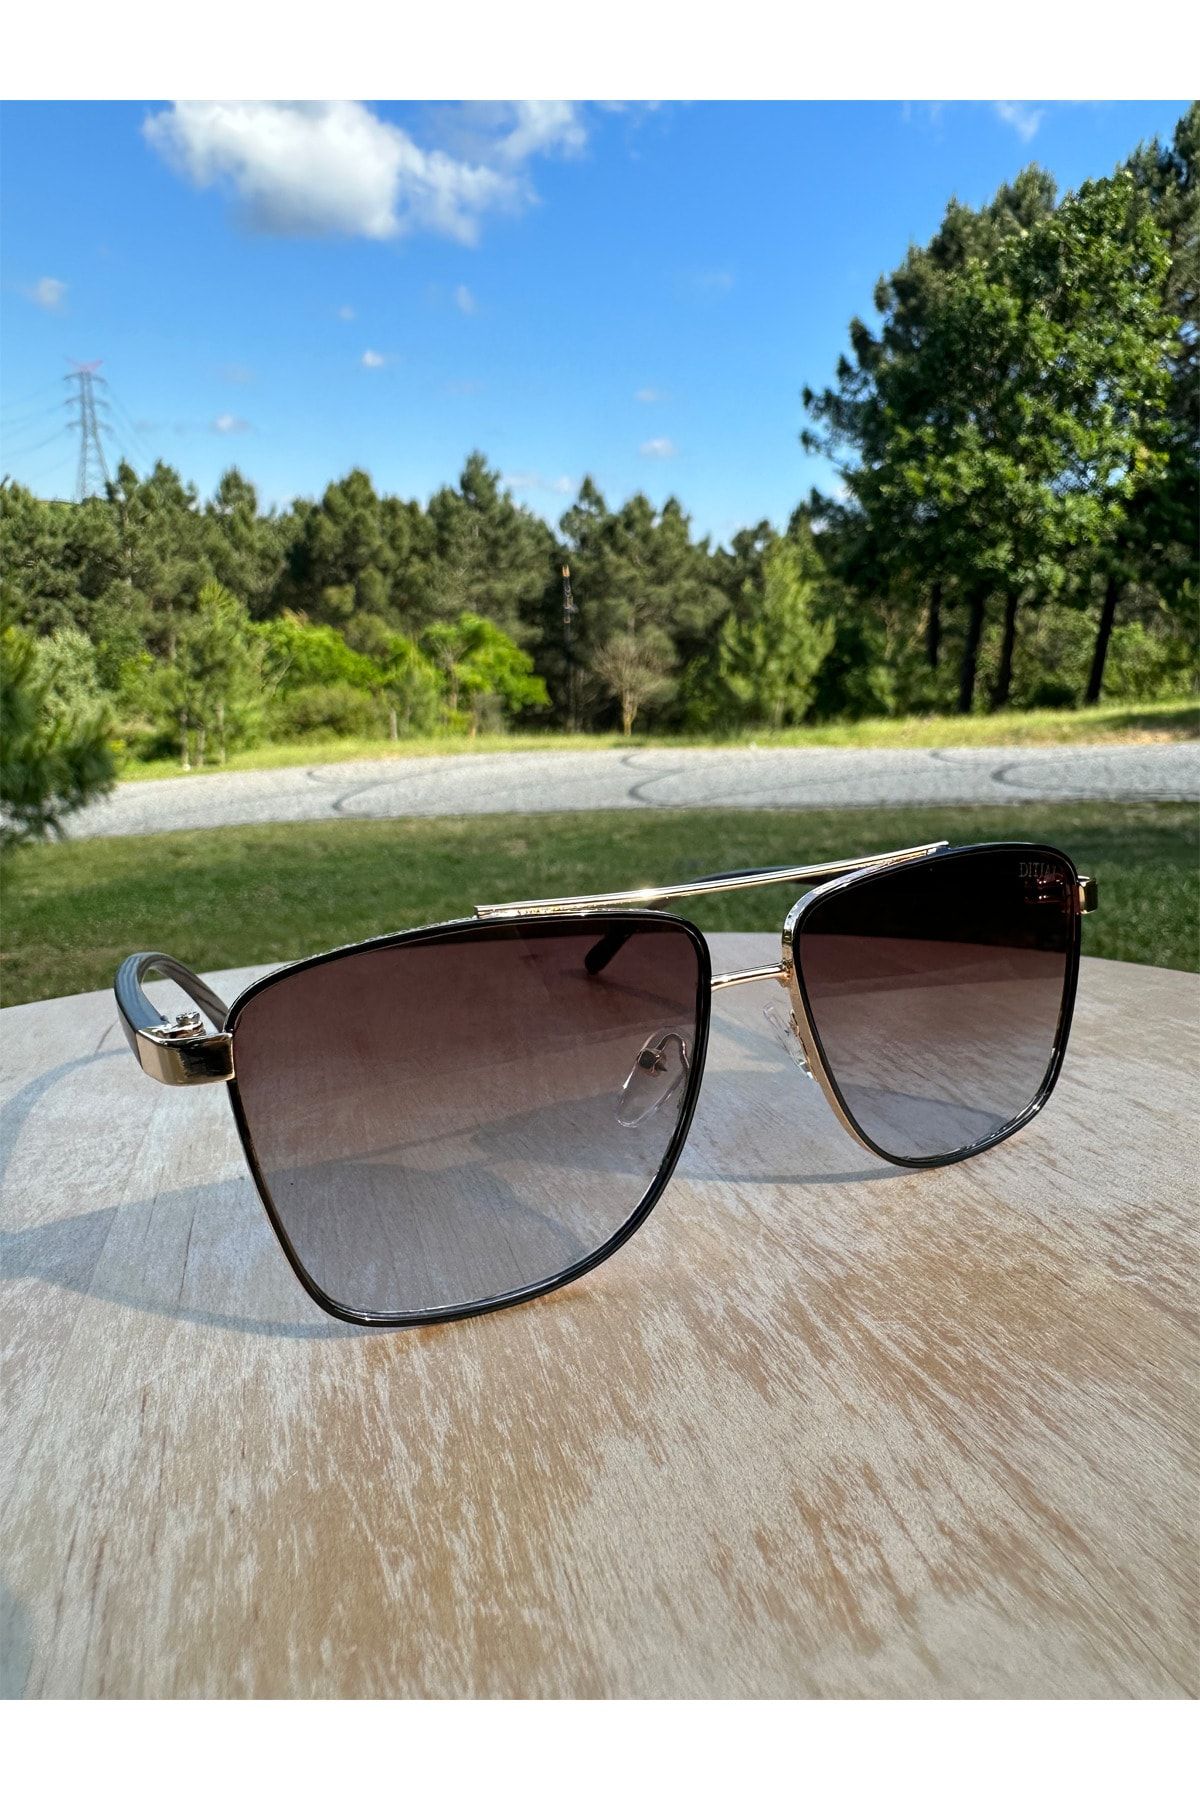 VisionGlasses DITIAI V5 Köşeli Kahverengi Camlı Kadın Güneş Gözlüğü